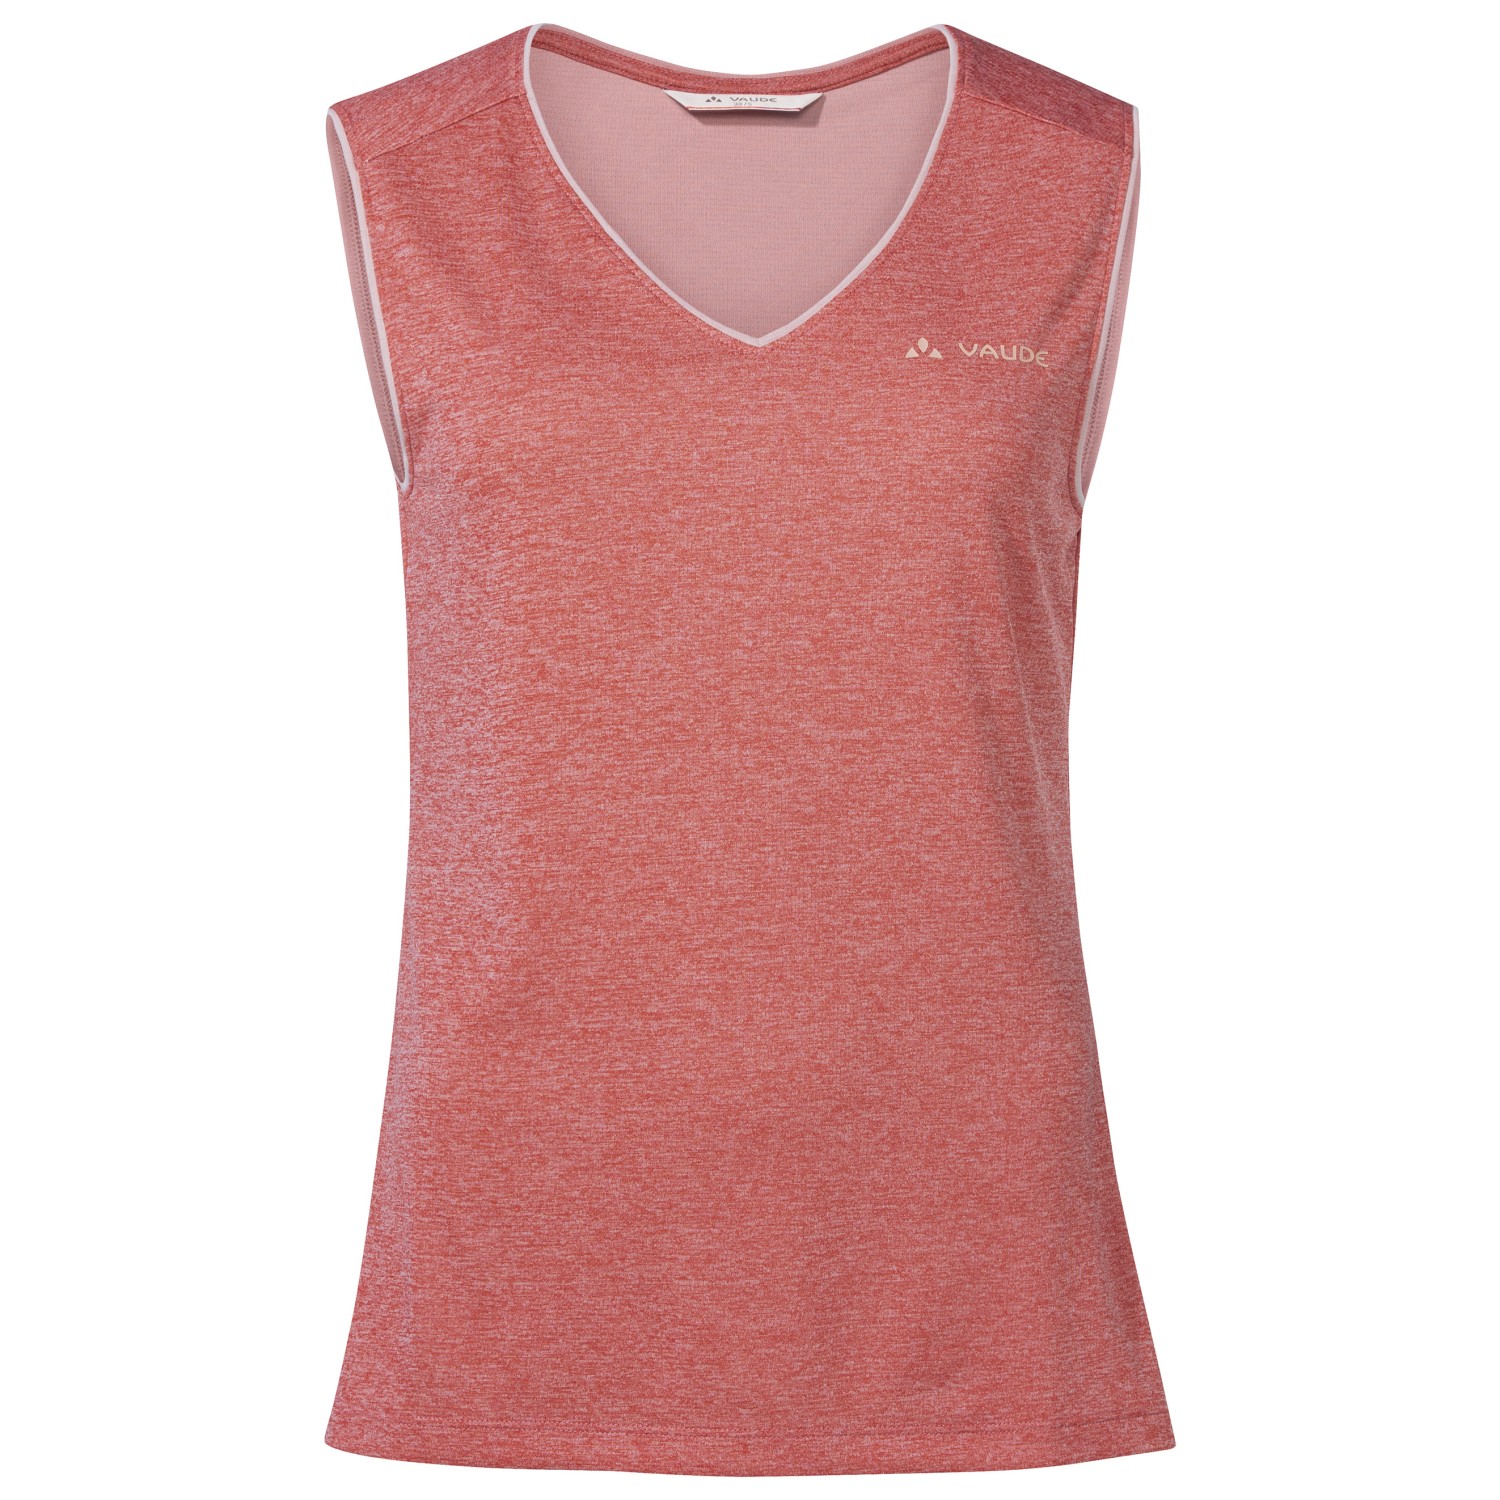 Функциональная рубашка Vaude Women's Essential Top, цвет Brick женский укороченный топ для занятий йогой и спортом